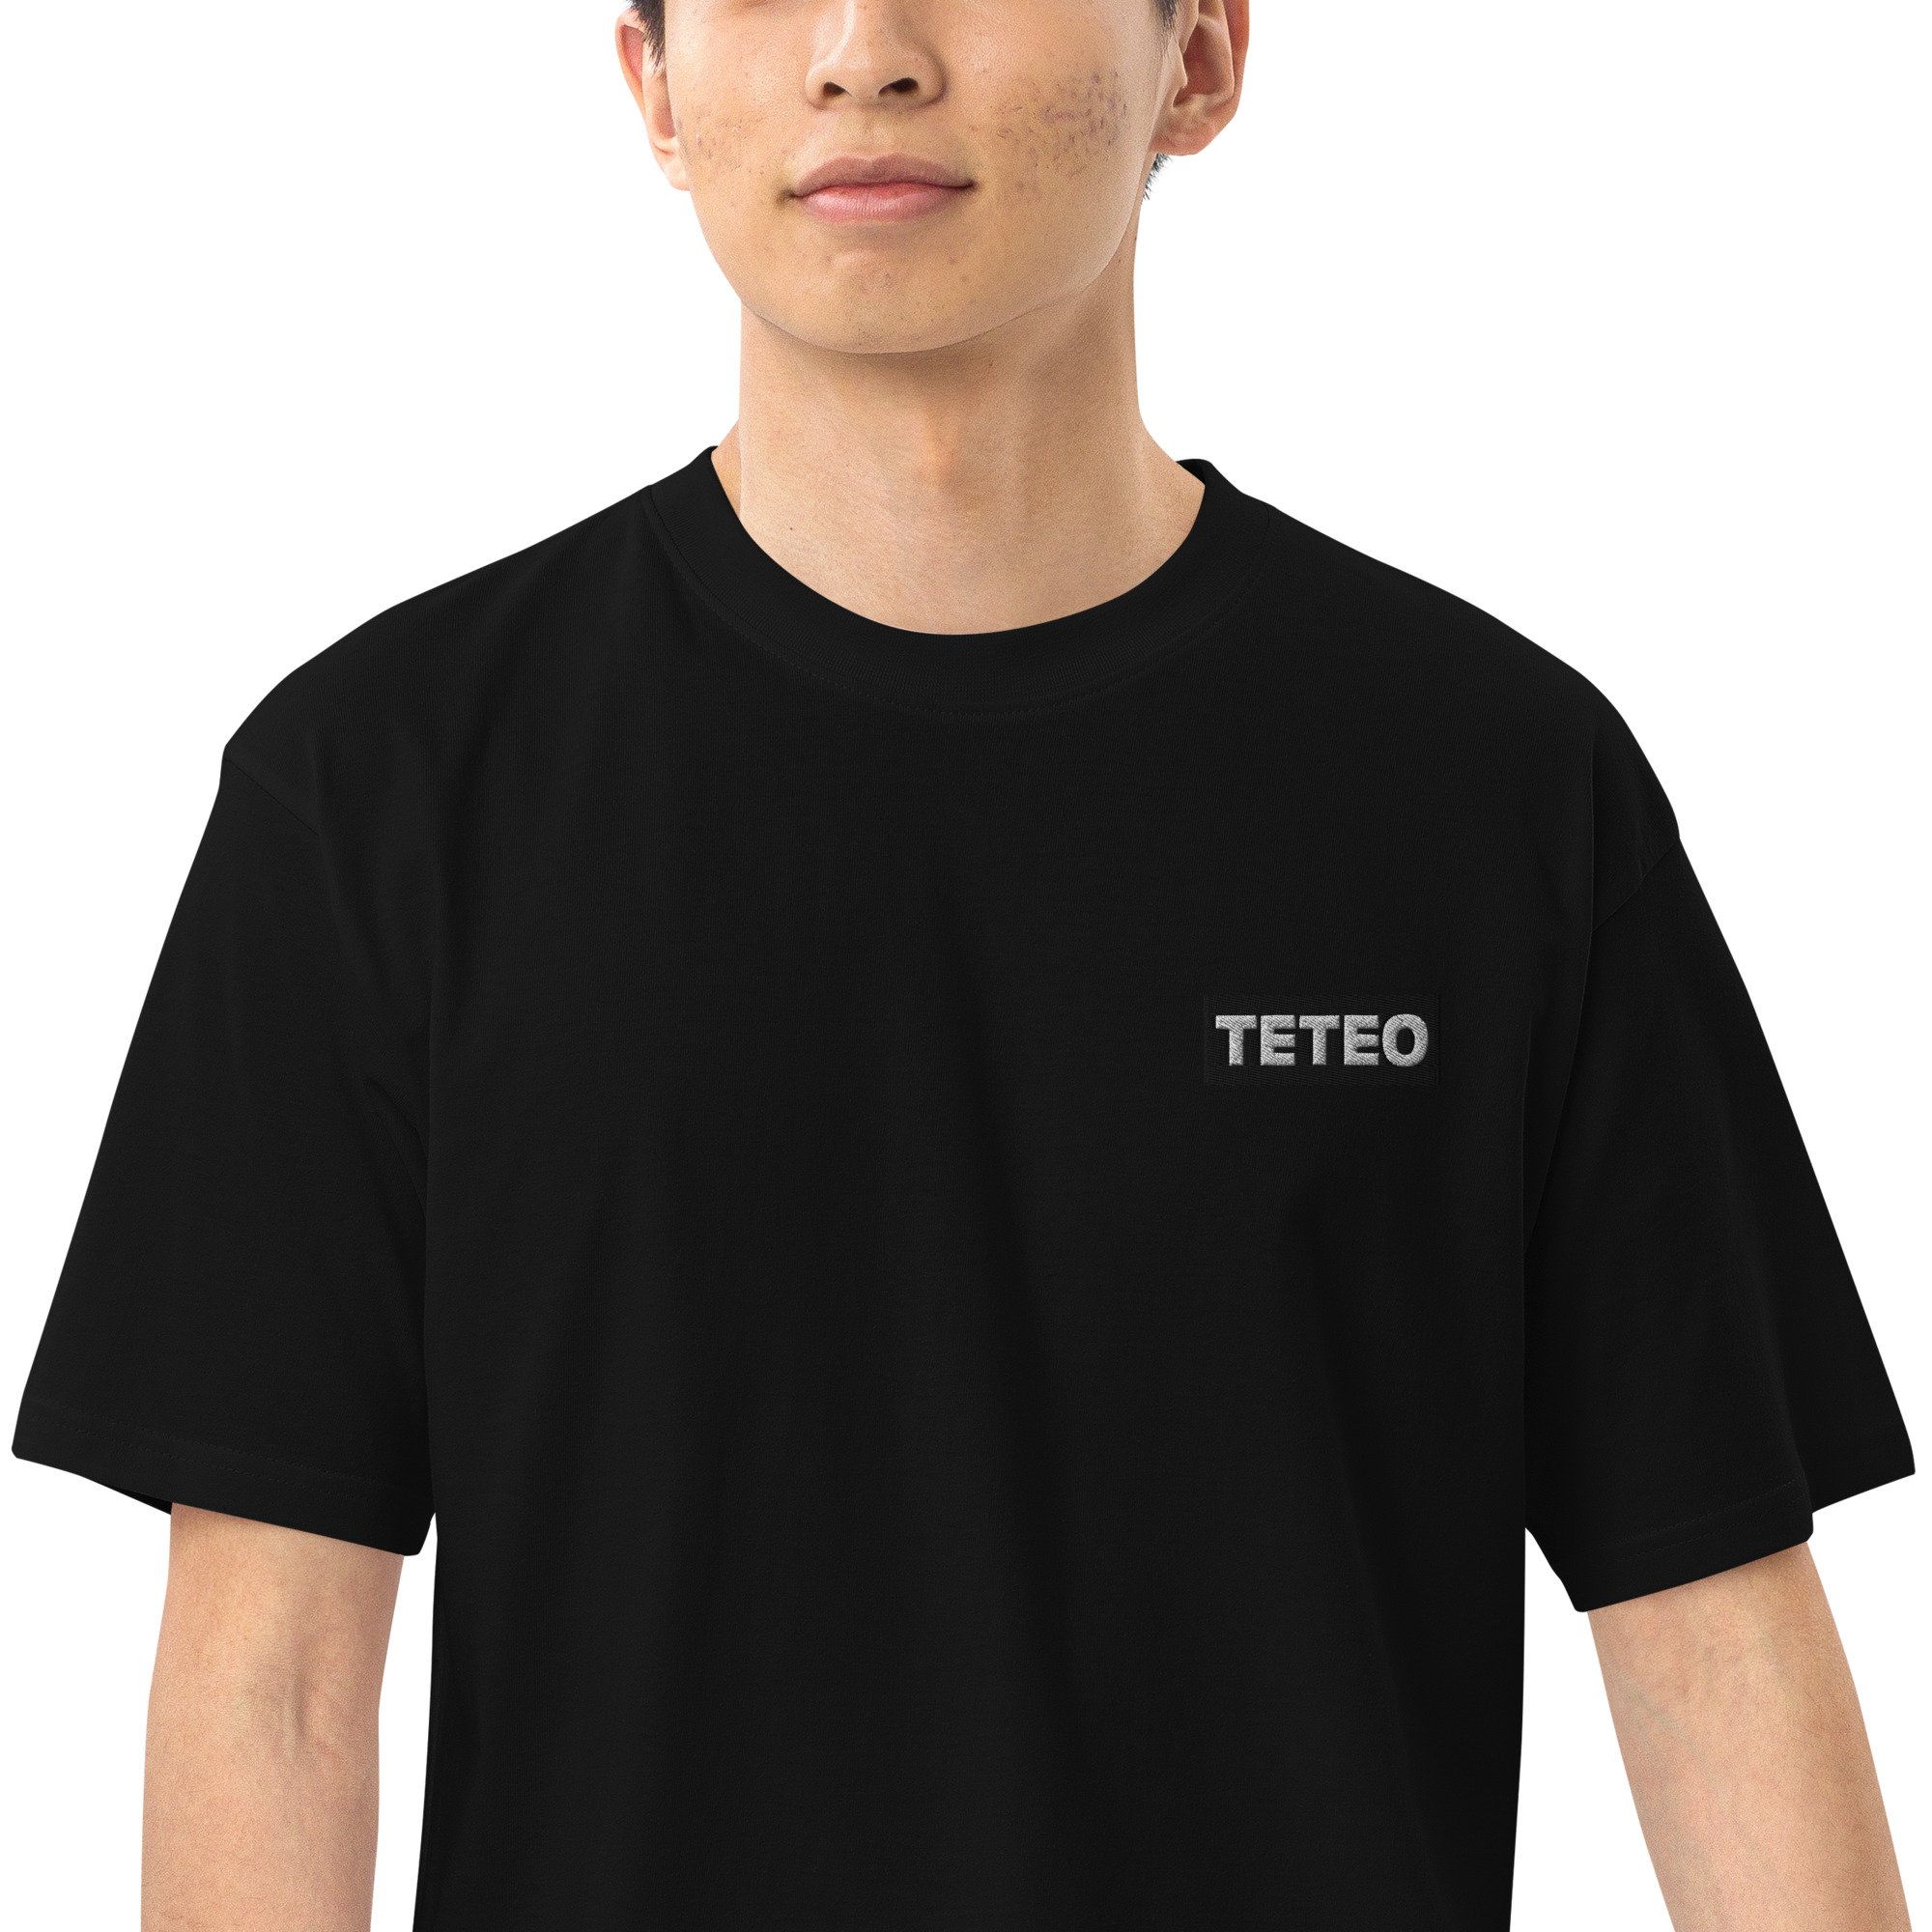 TETEO — Teteo